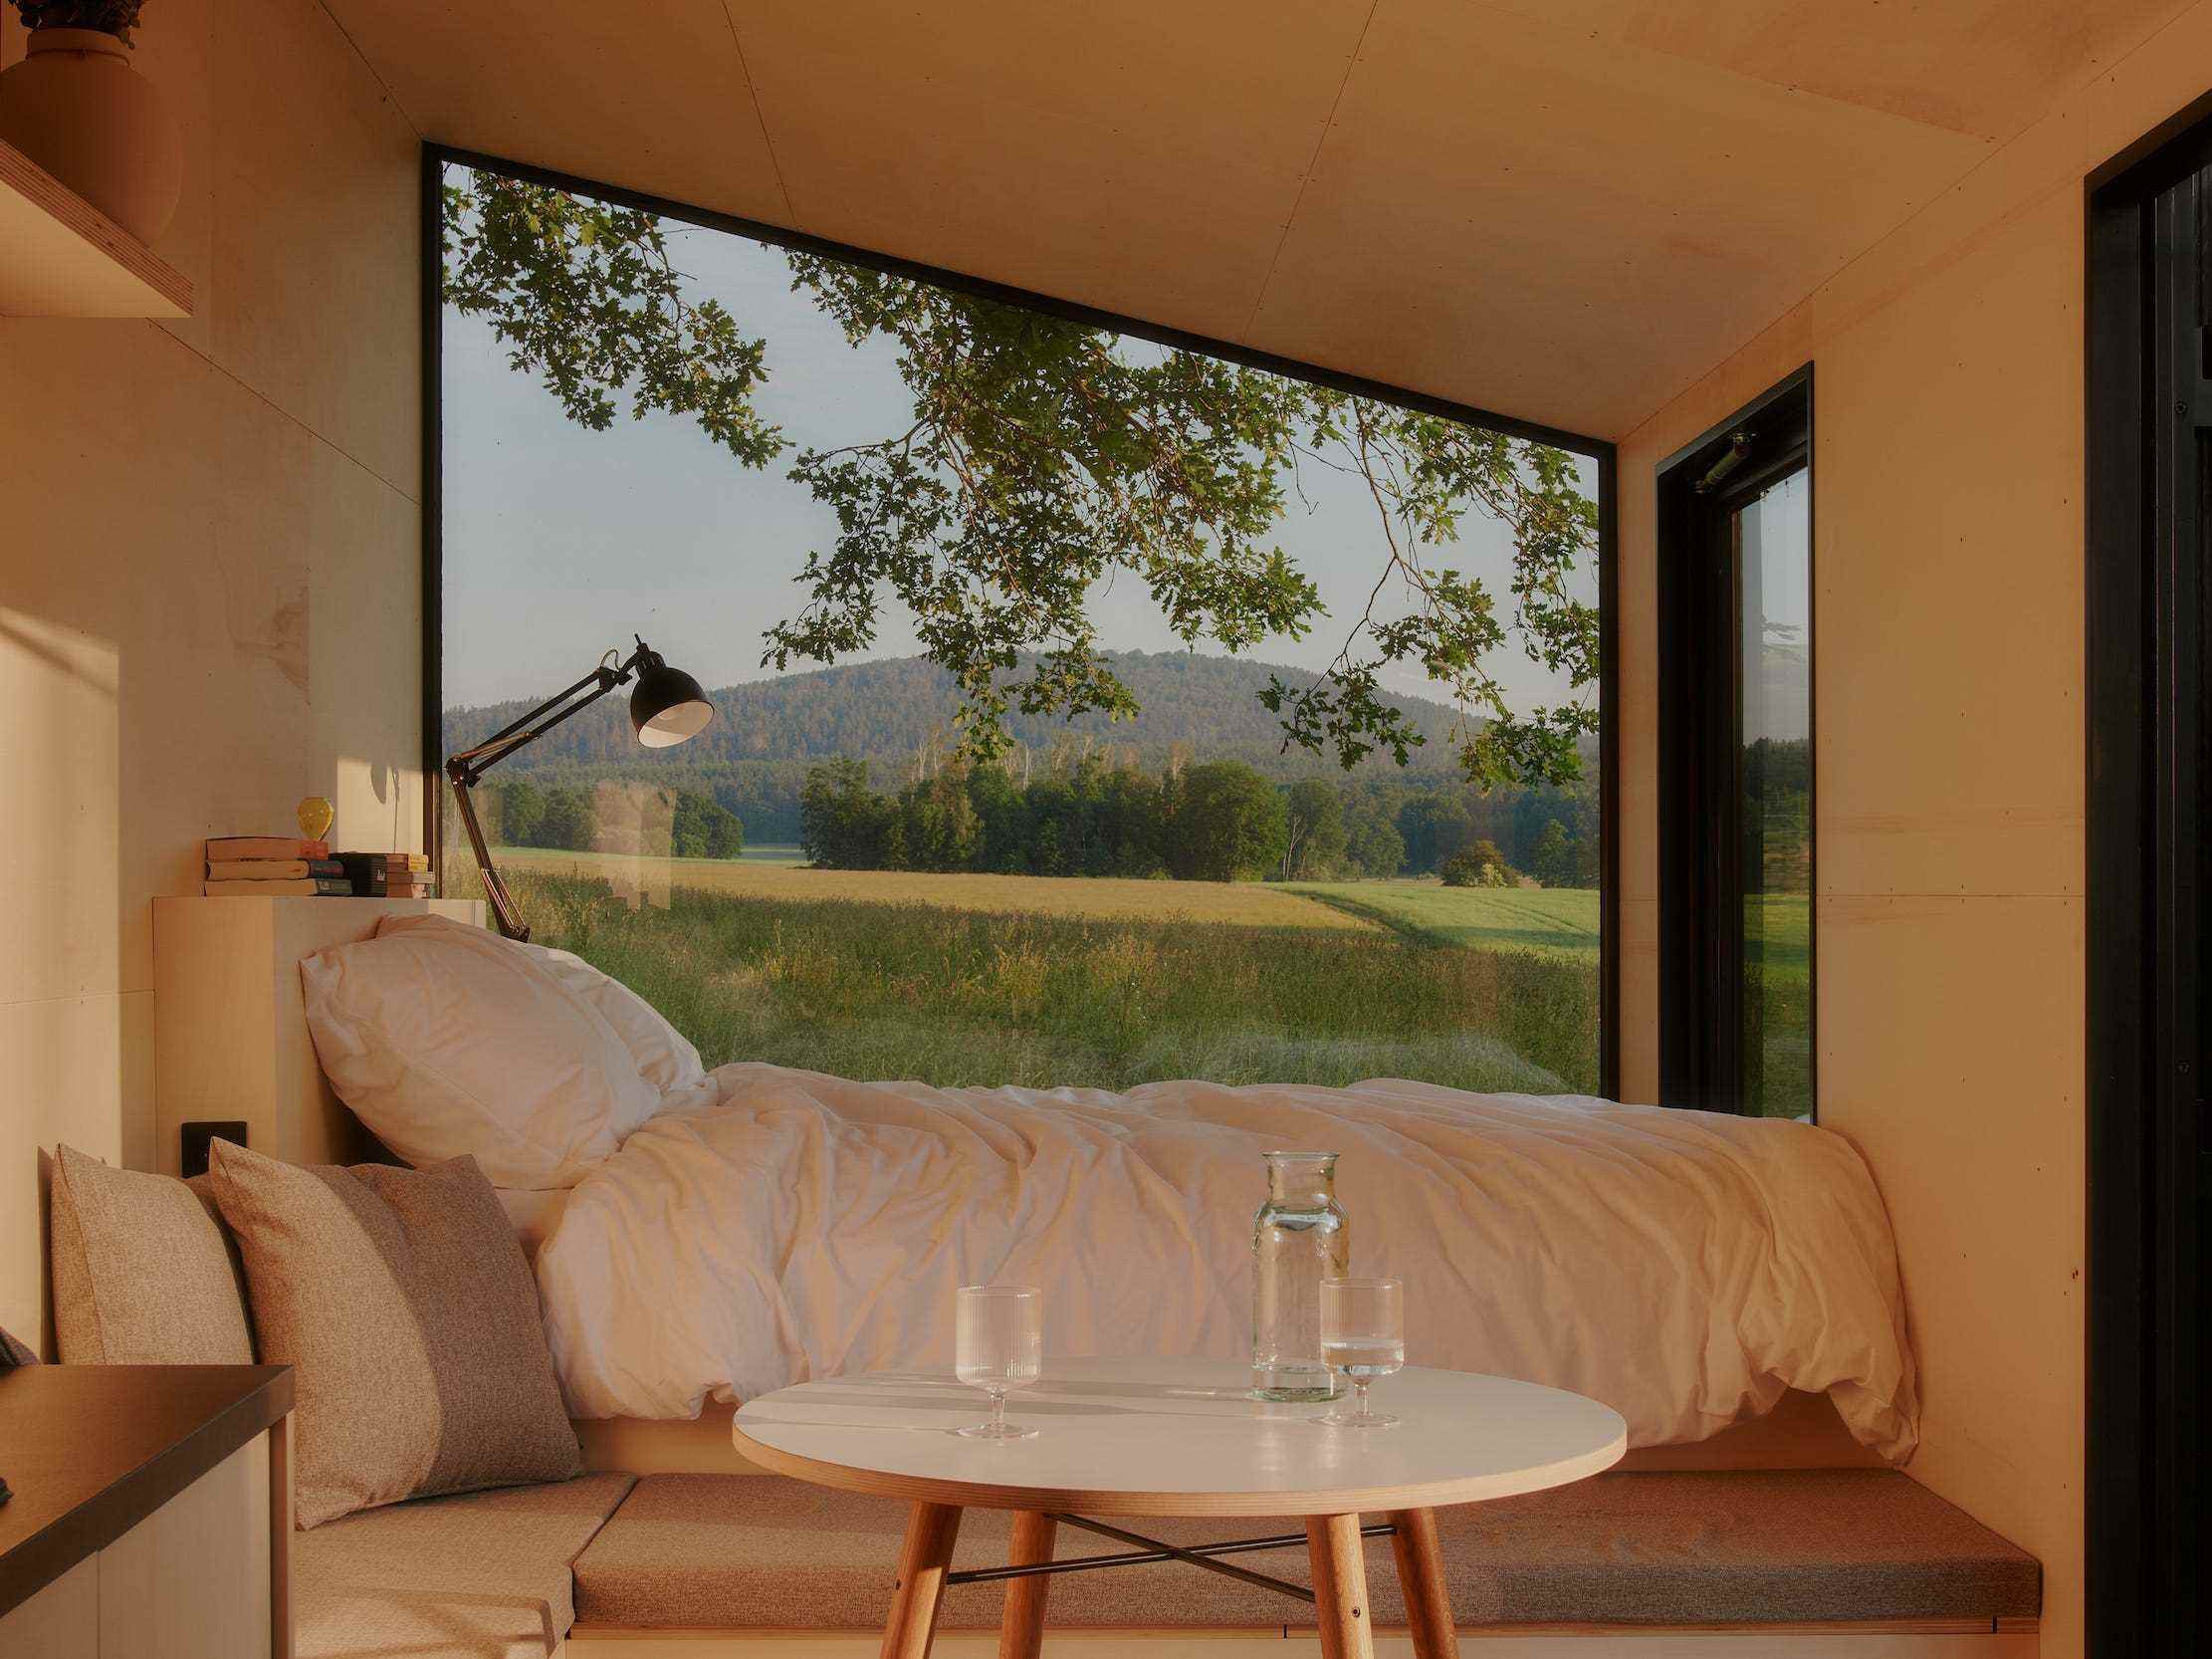 Ein Bett und ein Esstisch neben einem großen Fenster mit Blick in die Natur